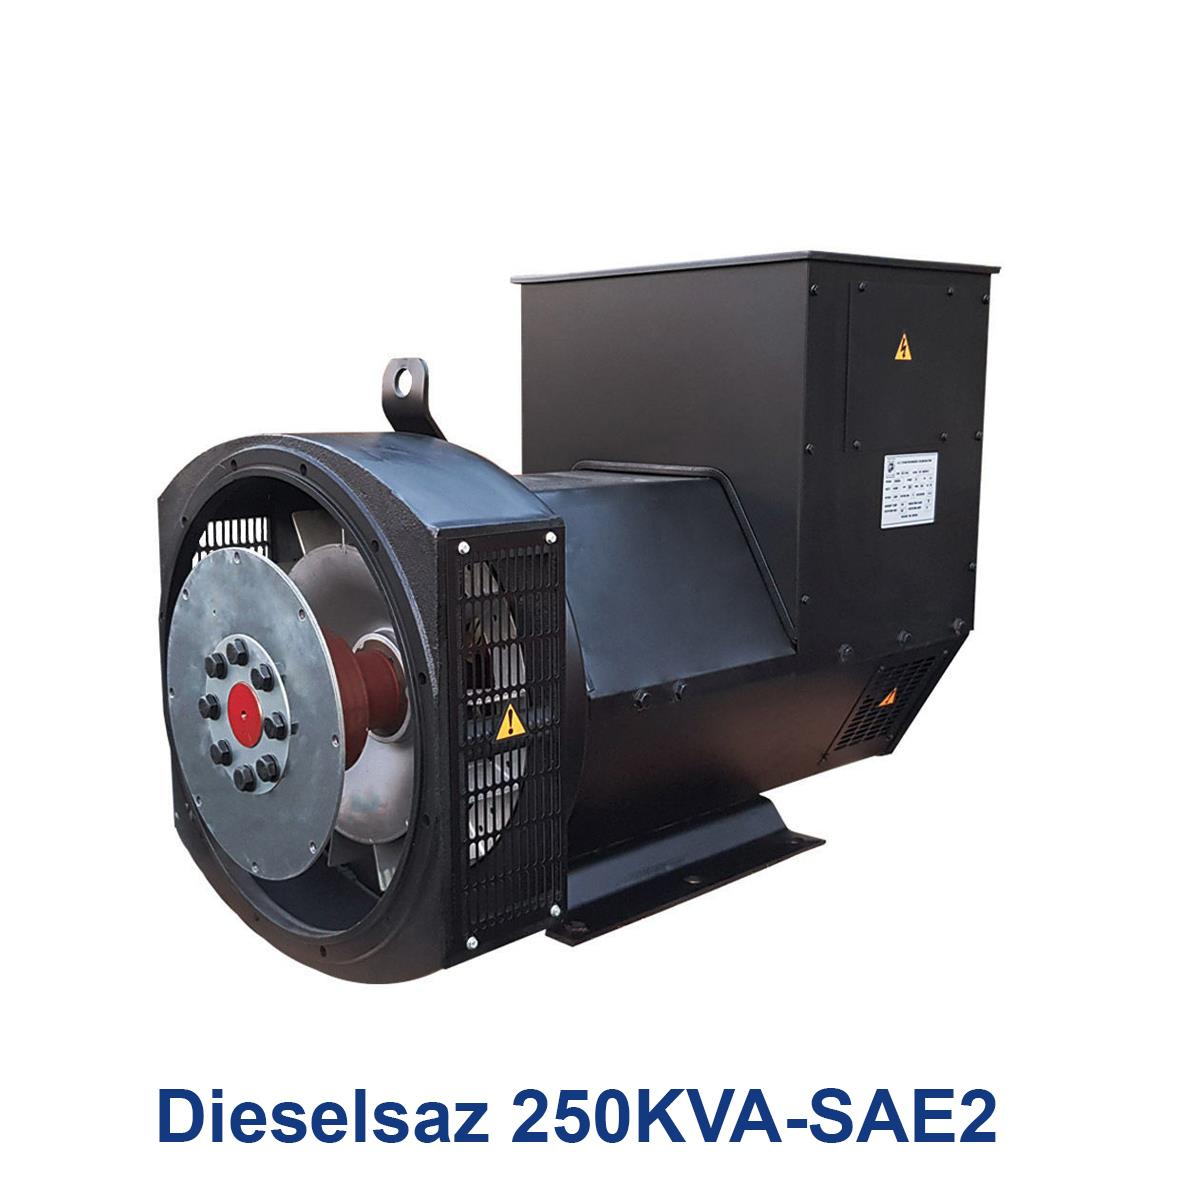 Dieselsaz-250KVA-SAE2